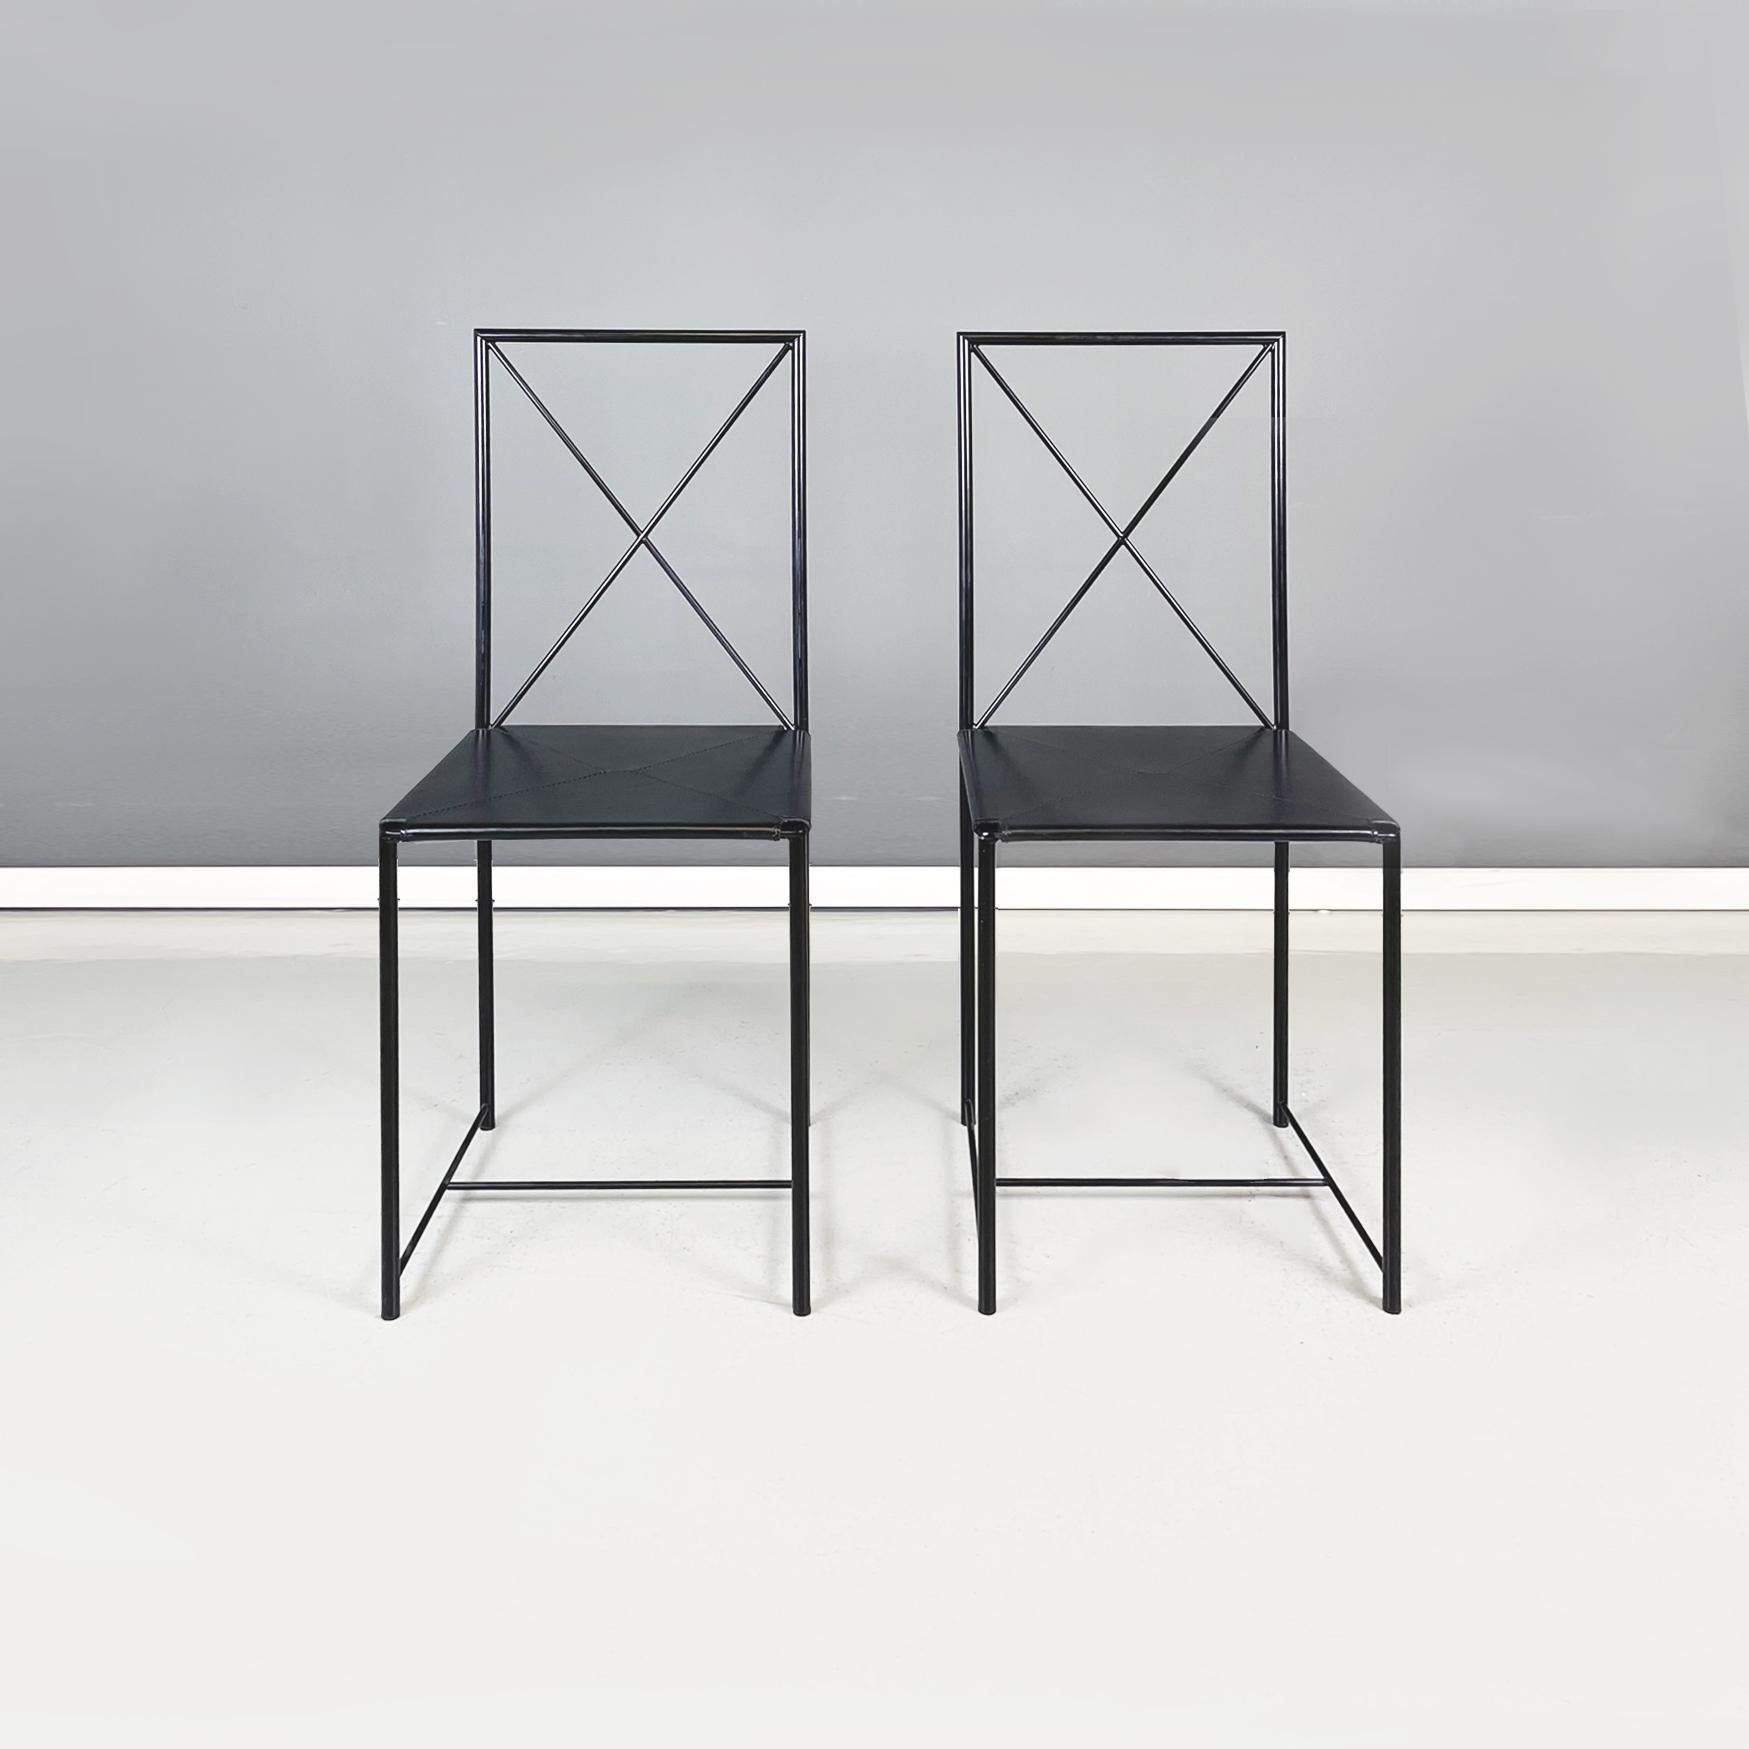 Chaises modernes italiennes en métal noir et cuir Moka par Asnago et Vender pour Flexoform, 1939
Paire de chaises mod. Moka avec assise carrée en cuir noir, maintenue tendue par une série de sangles élastiques. La structure est entièrement en tige